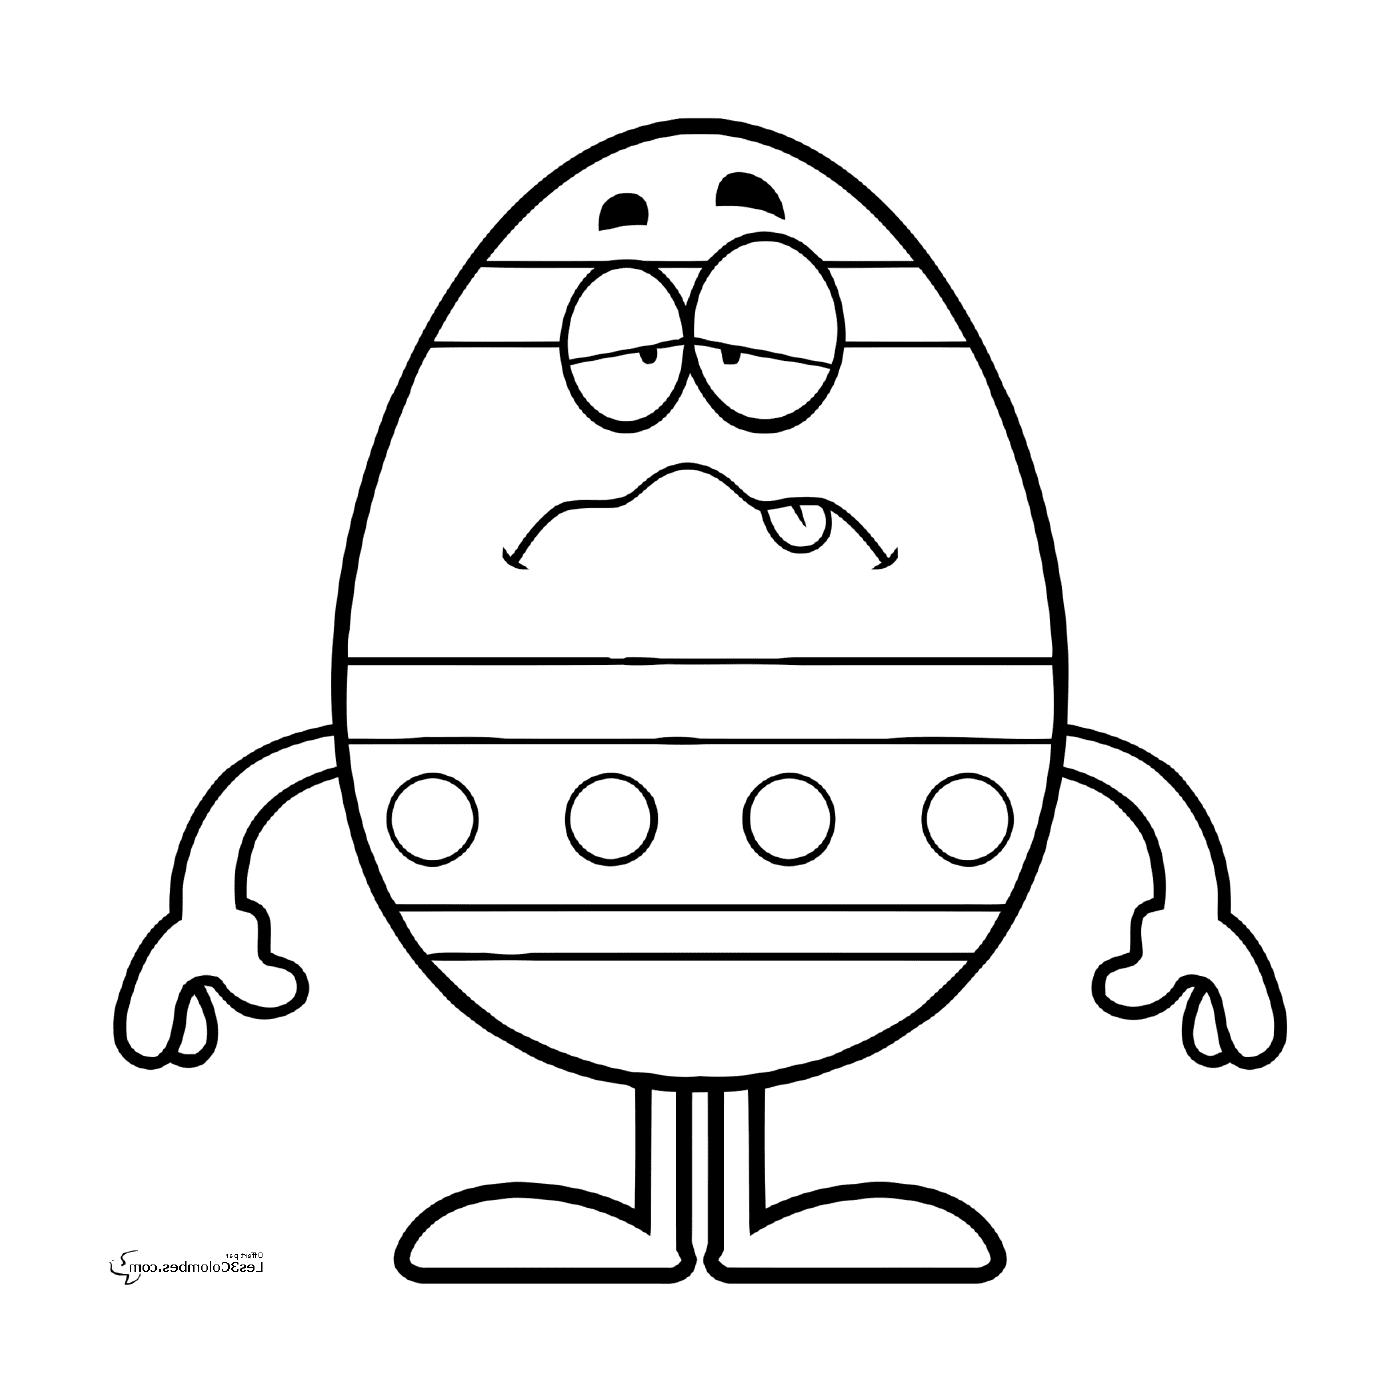  196, um triste ovo de Páscoa 